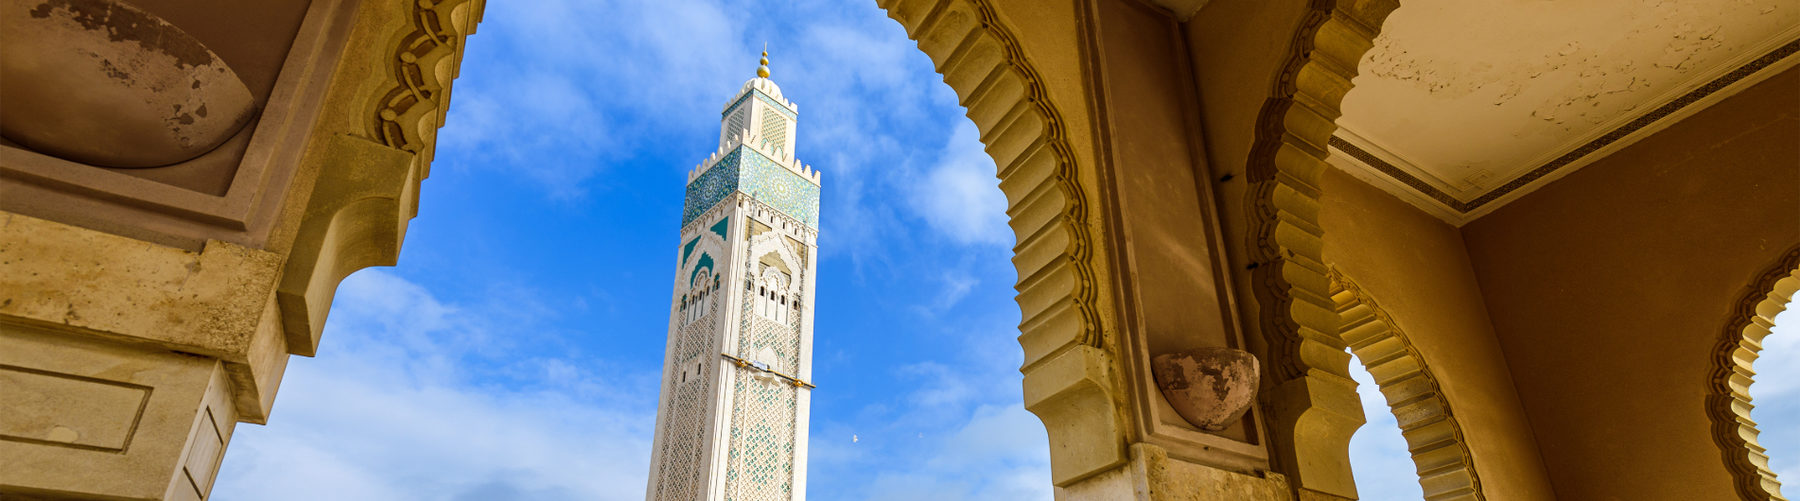 Medinas of Morocco Tour